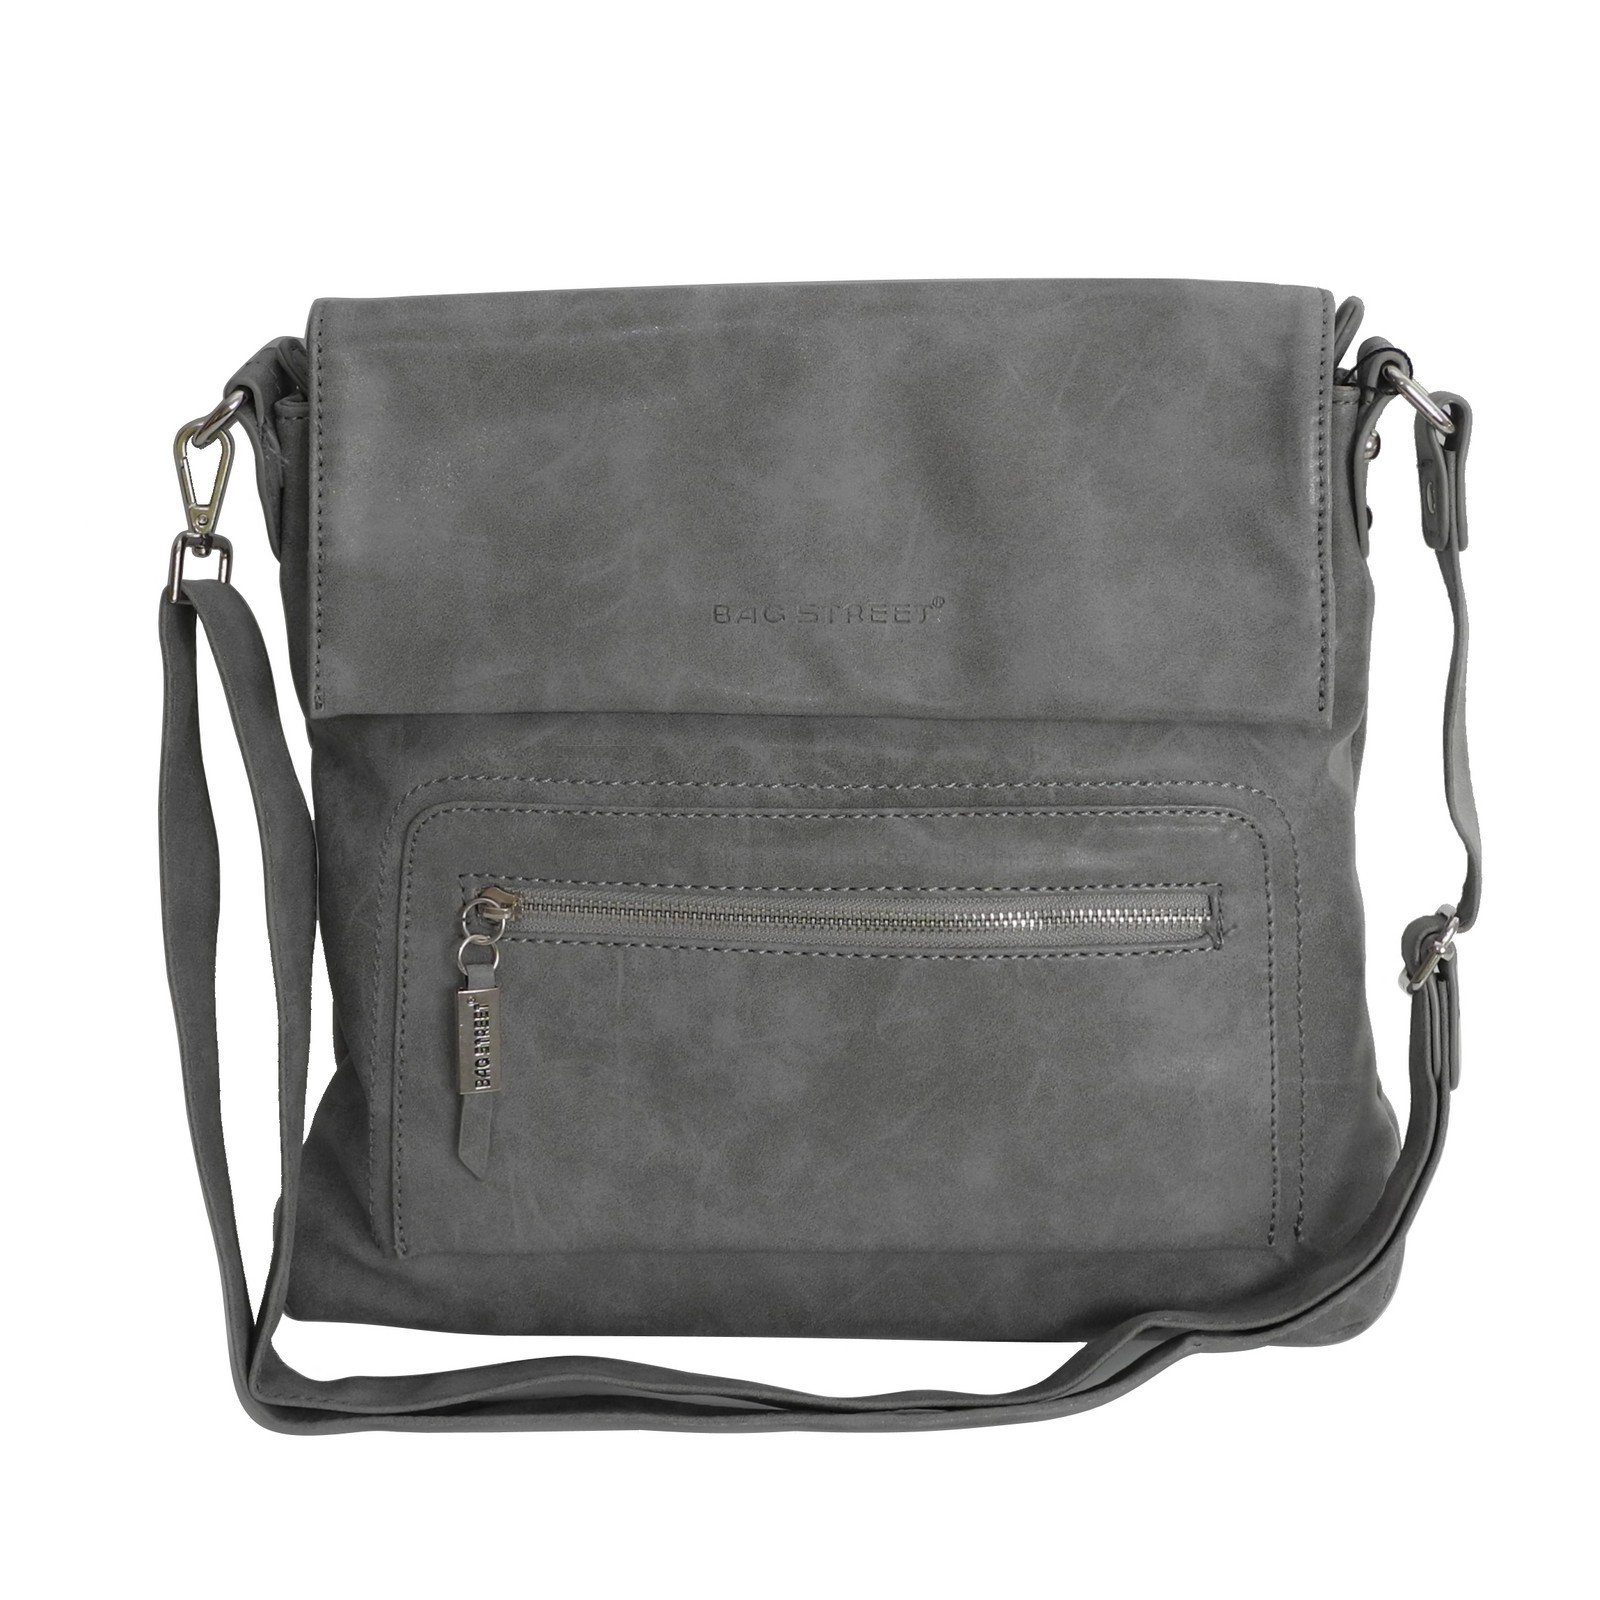 STREET BAG Damen Street Grau Handtasche Damentasche Umhängetasche Messengerbag - Auswahl Bag